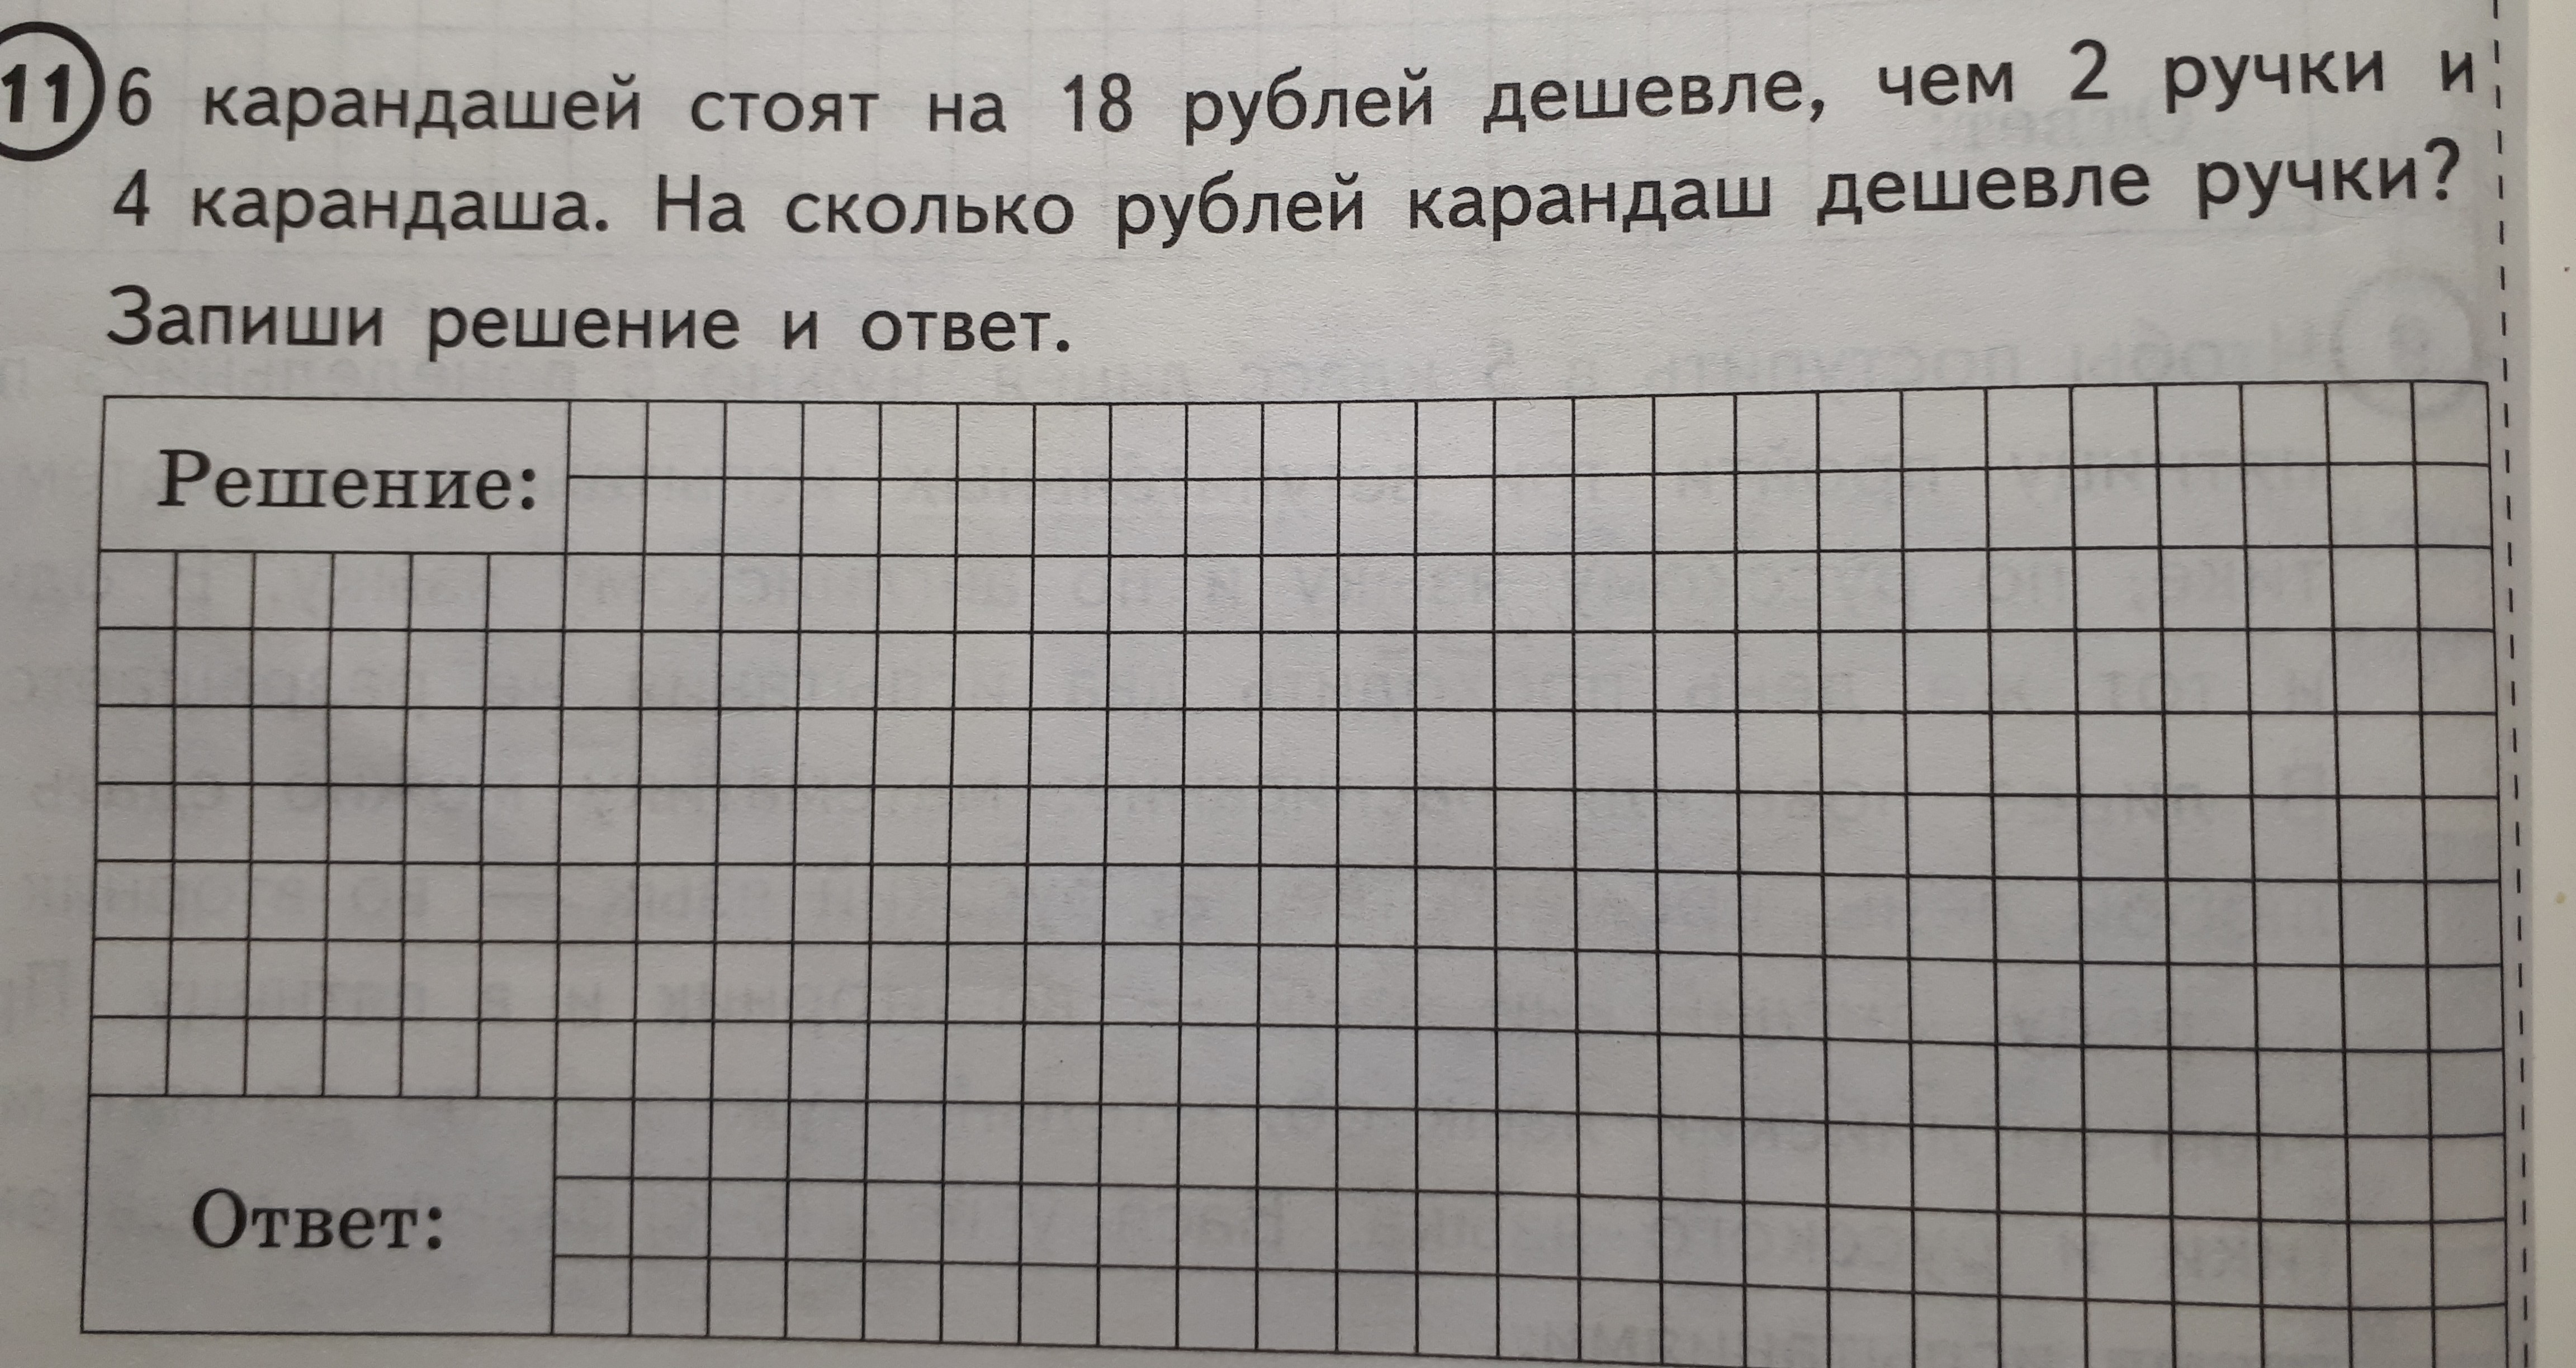 5 карандашей на 16 рублей дешевле. 6 Карандашей стоят. 6 Карандашей стоят на 18 рублей. Задача про карандаши. Решение задачи с карандашами.